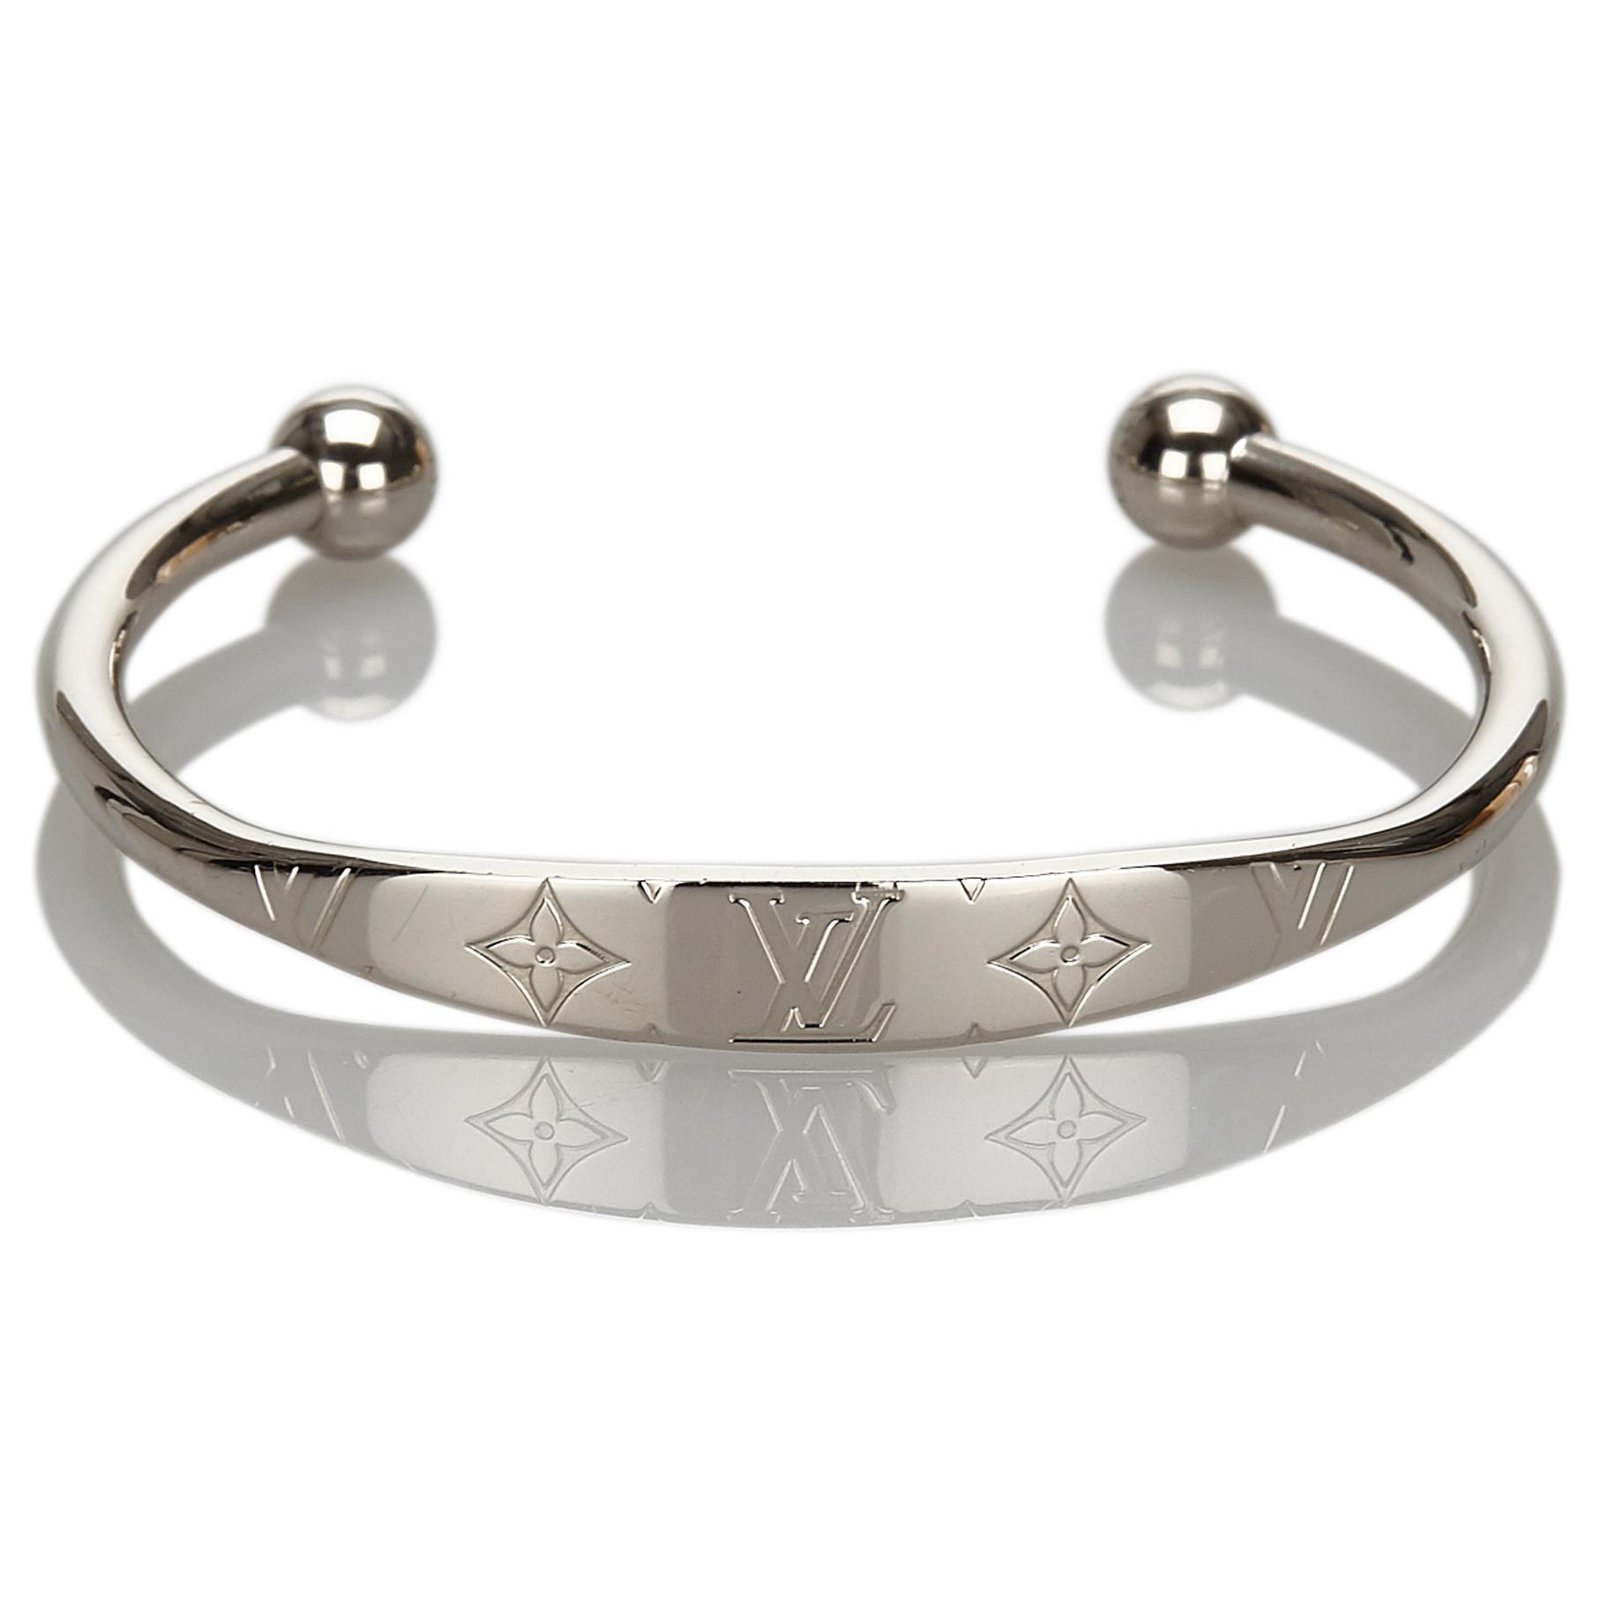 Louis Vuitton Armbänder aus Metall - Silber - 25995935